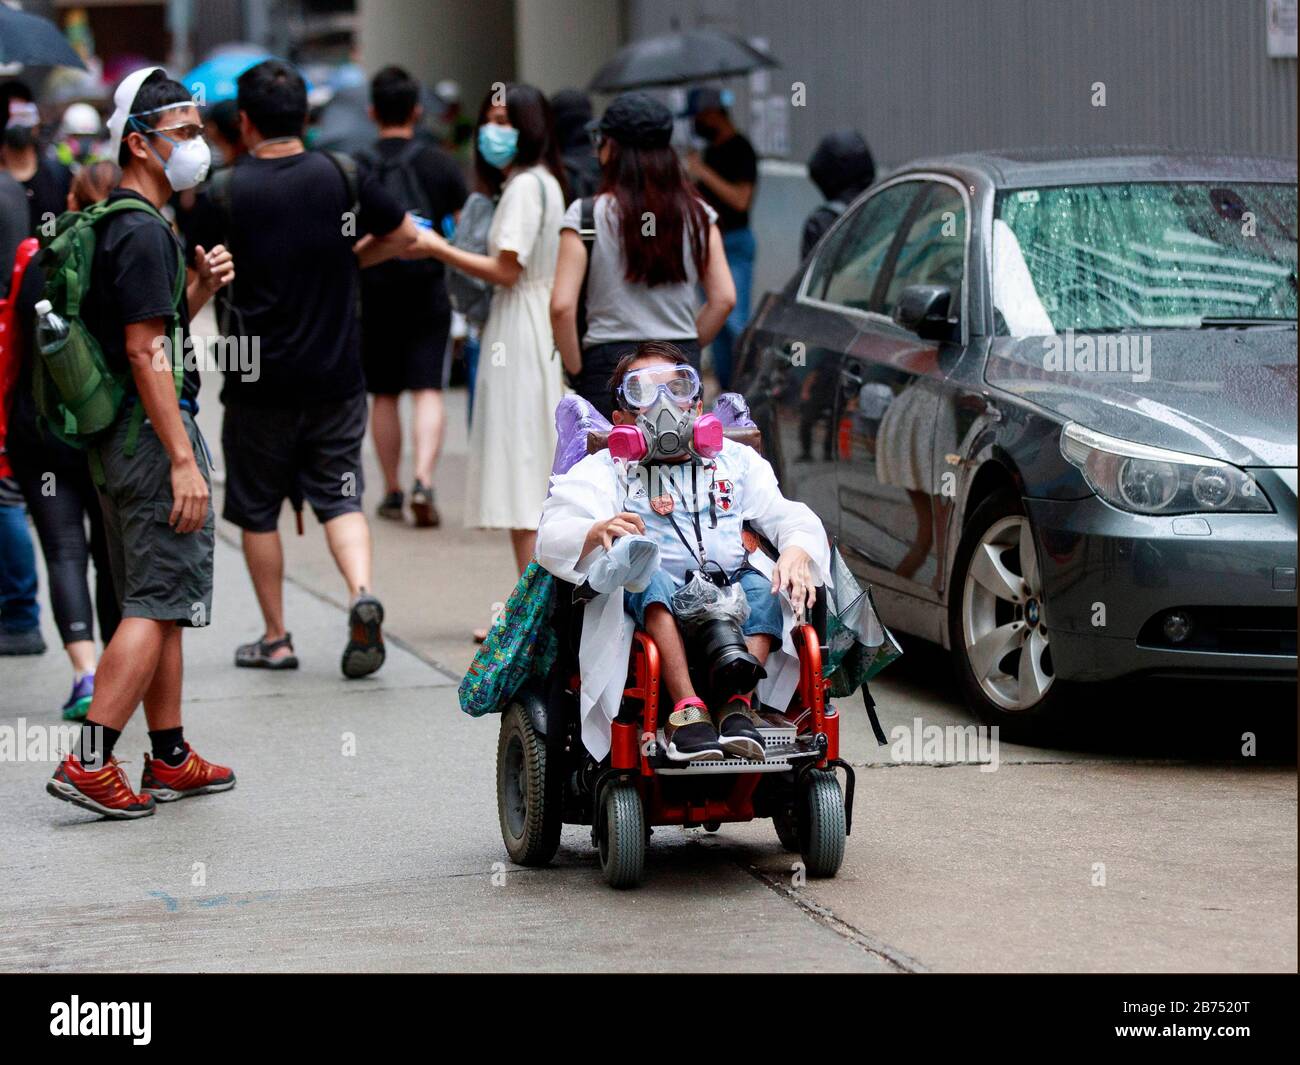 Un fotografo in sedia a rotelle copre la protesta a Wanchai. I manifestanti si radunano contro la legge anti-maschera di Hong Kong. Foto Stock